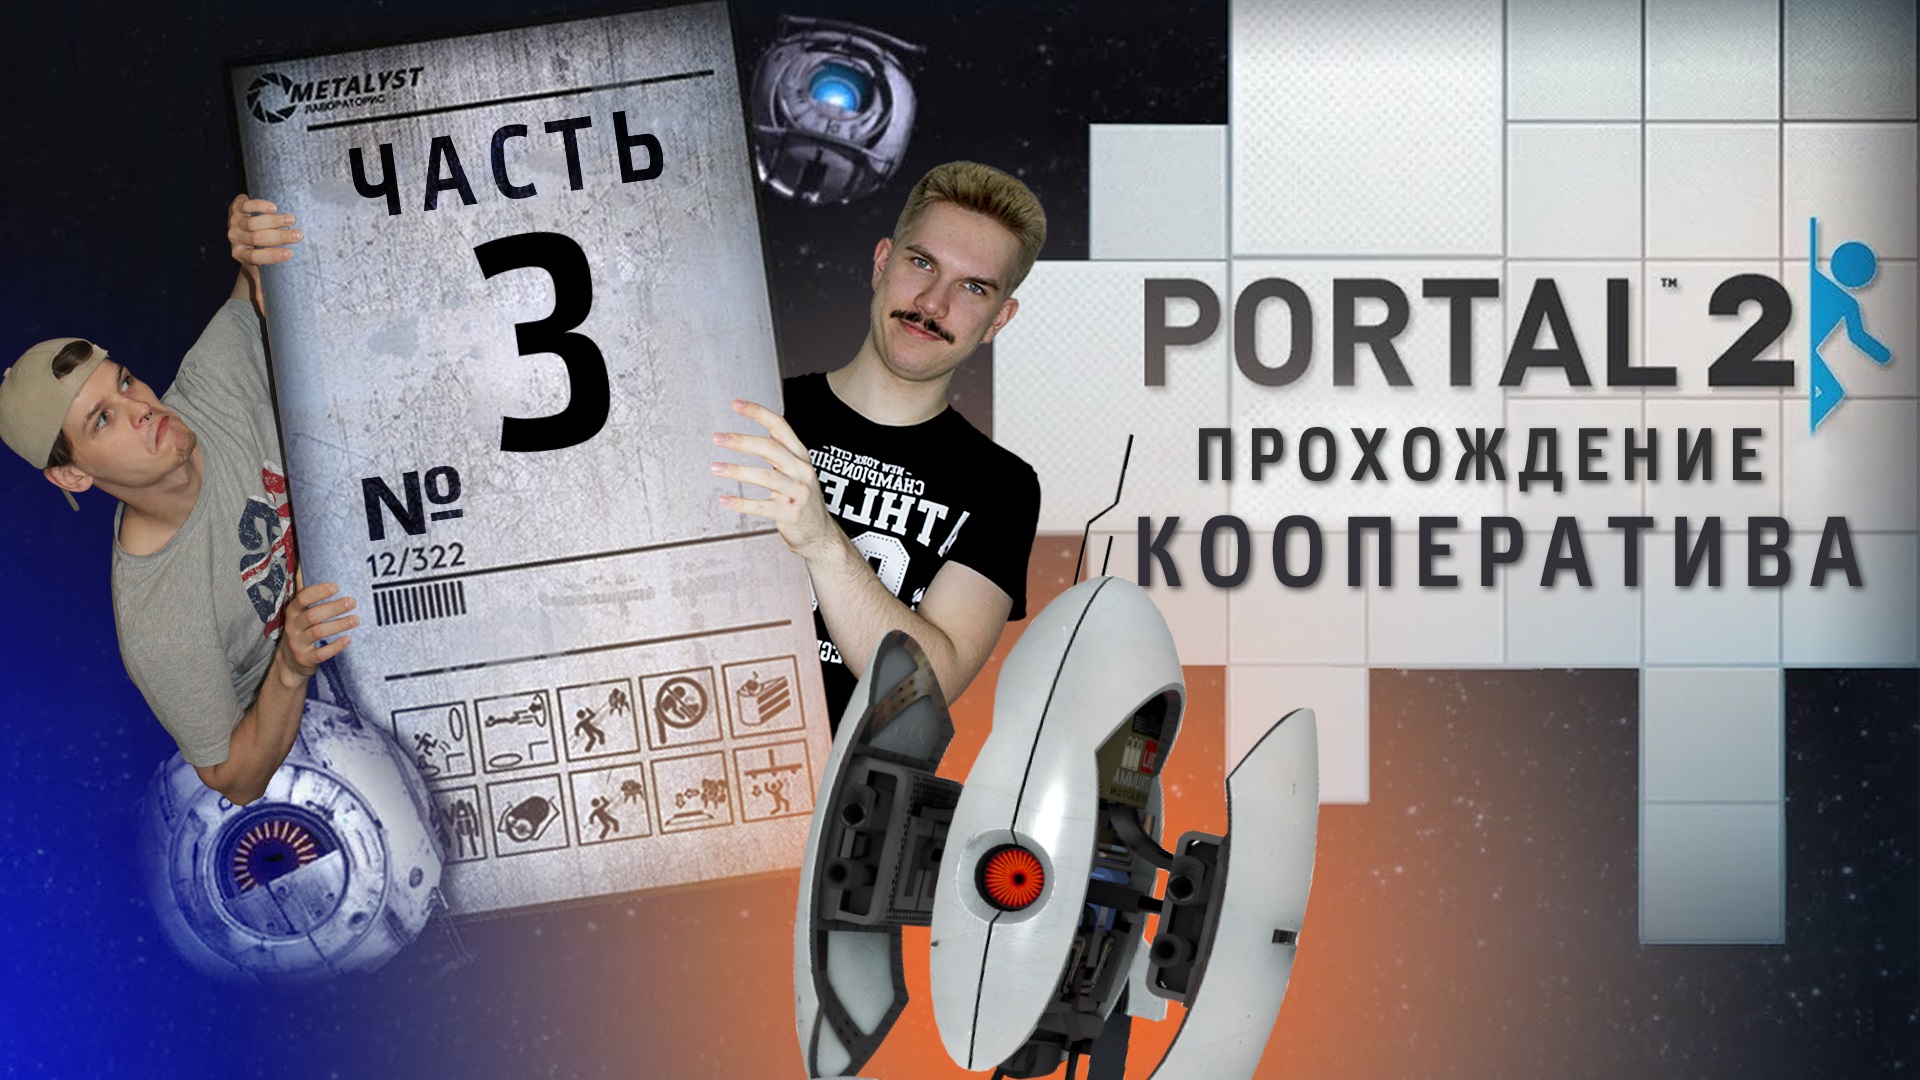 Portal 2 кооператив как пройти фото 27